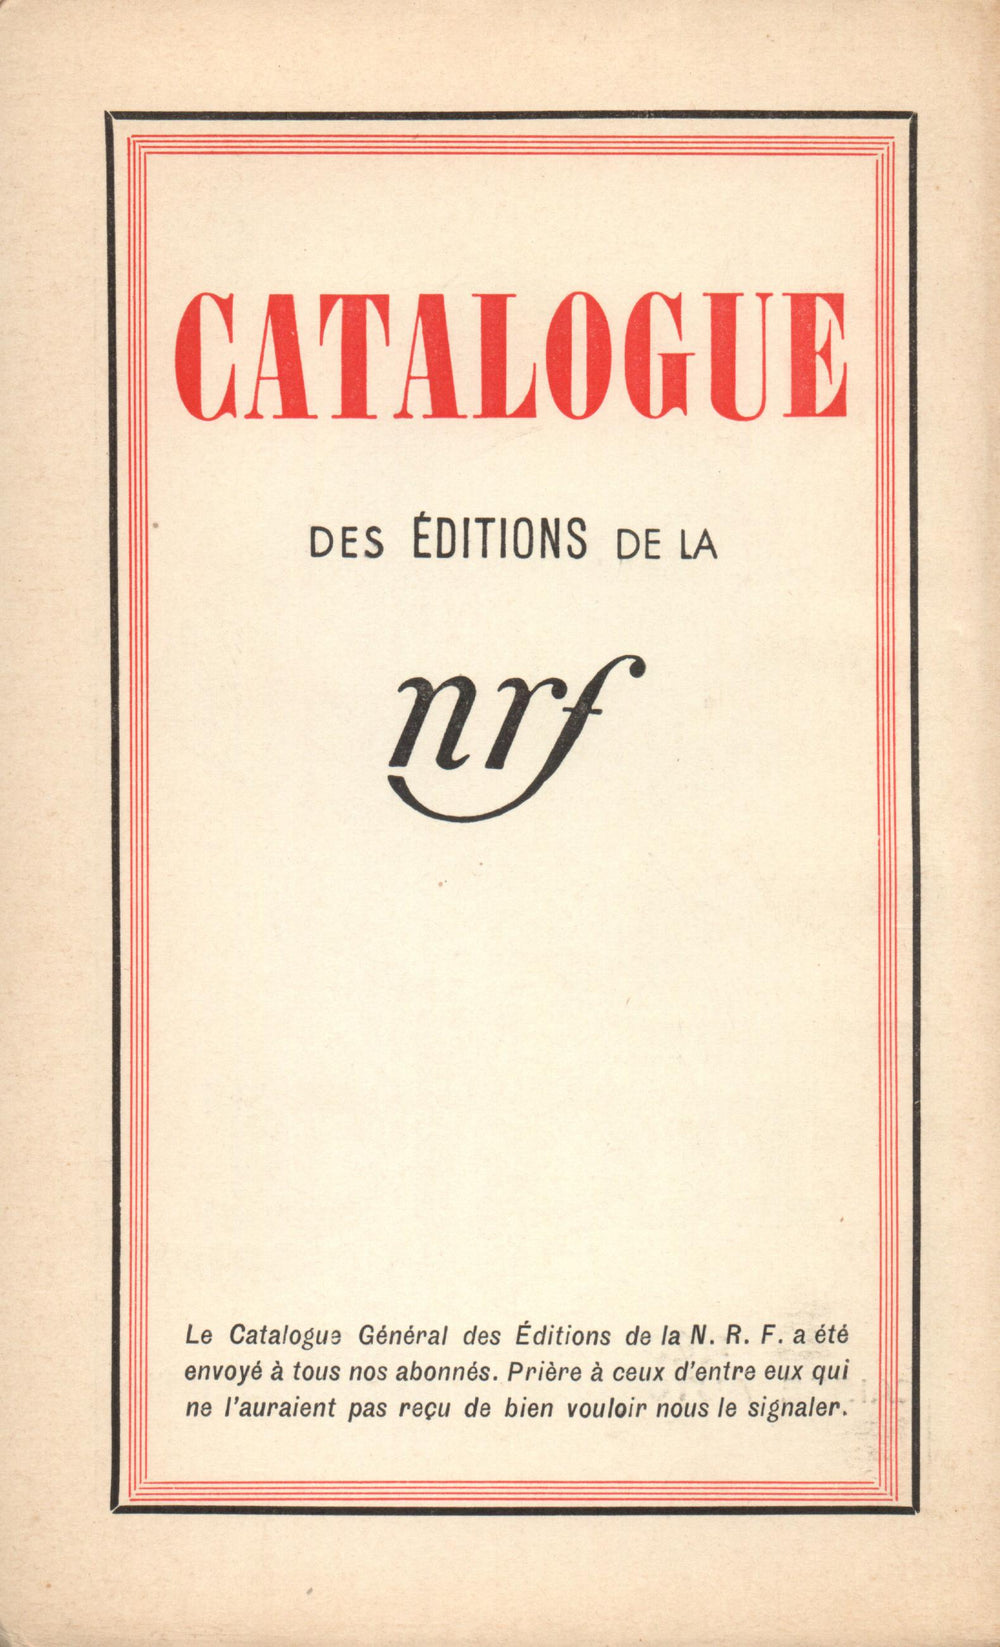 La Nouvelle Revue Française N° 284 (Mai 1937)